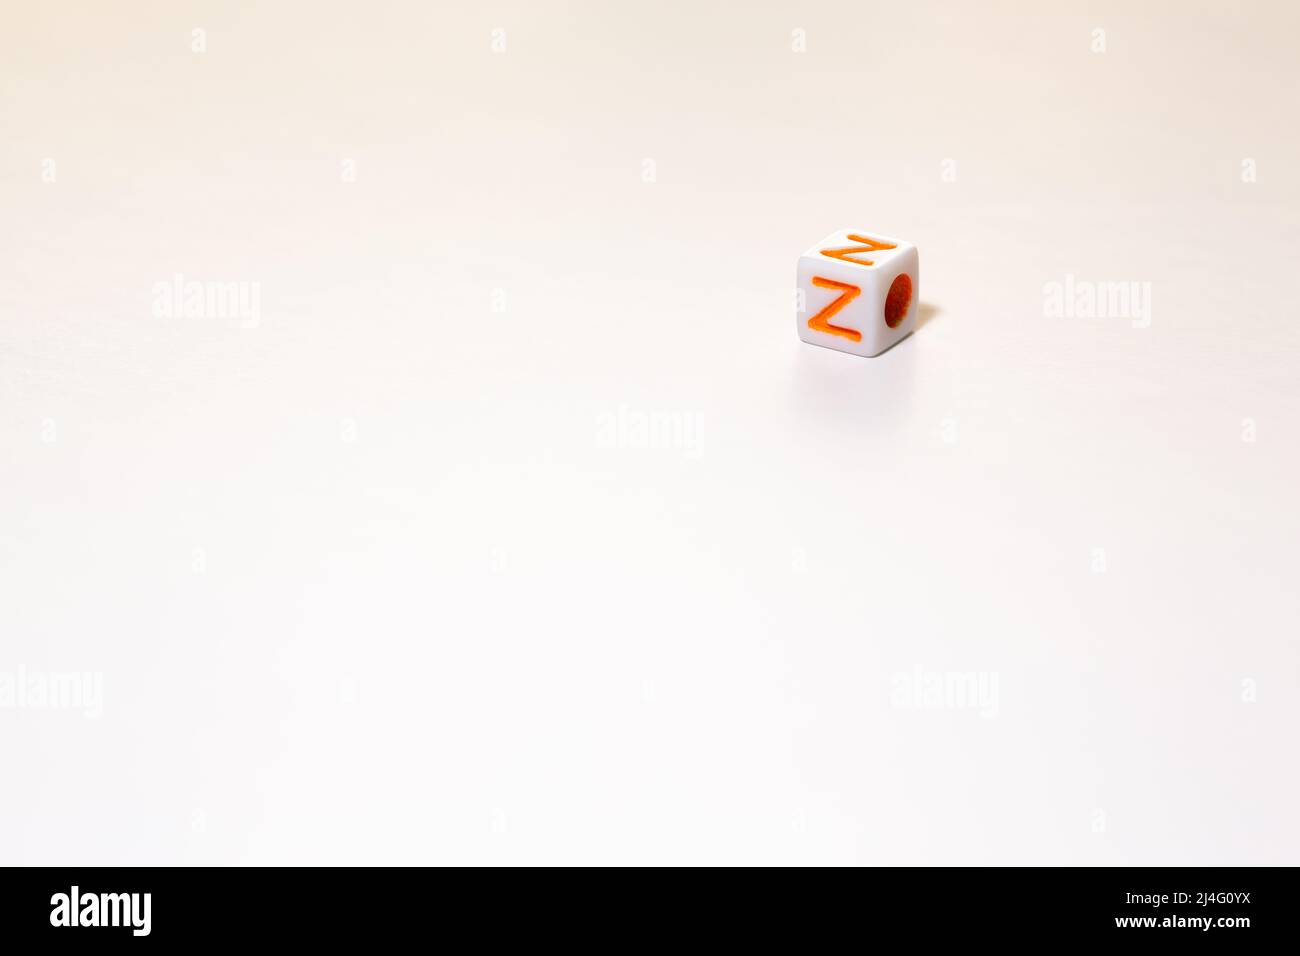 Würfelförmige Spielwürfel mit dem orangefarbenen Buchstaben Z auf einem weißen isolierten Hintergrund. Freier Textbereich unten und links. Konzept der Generation Z. Stockfoto